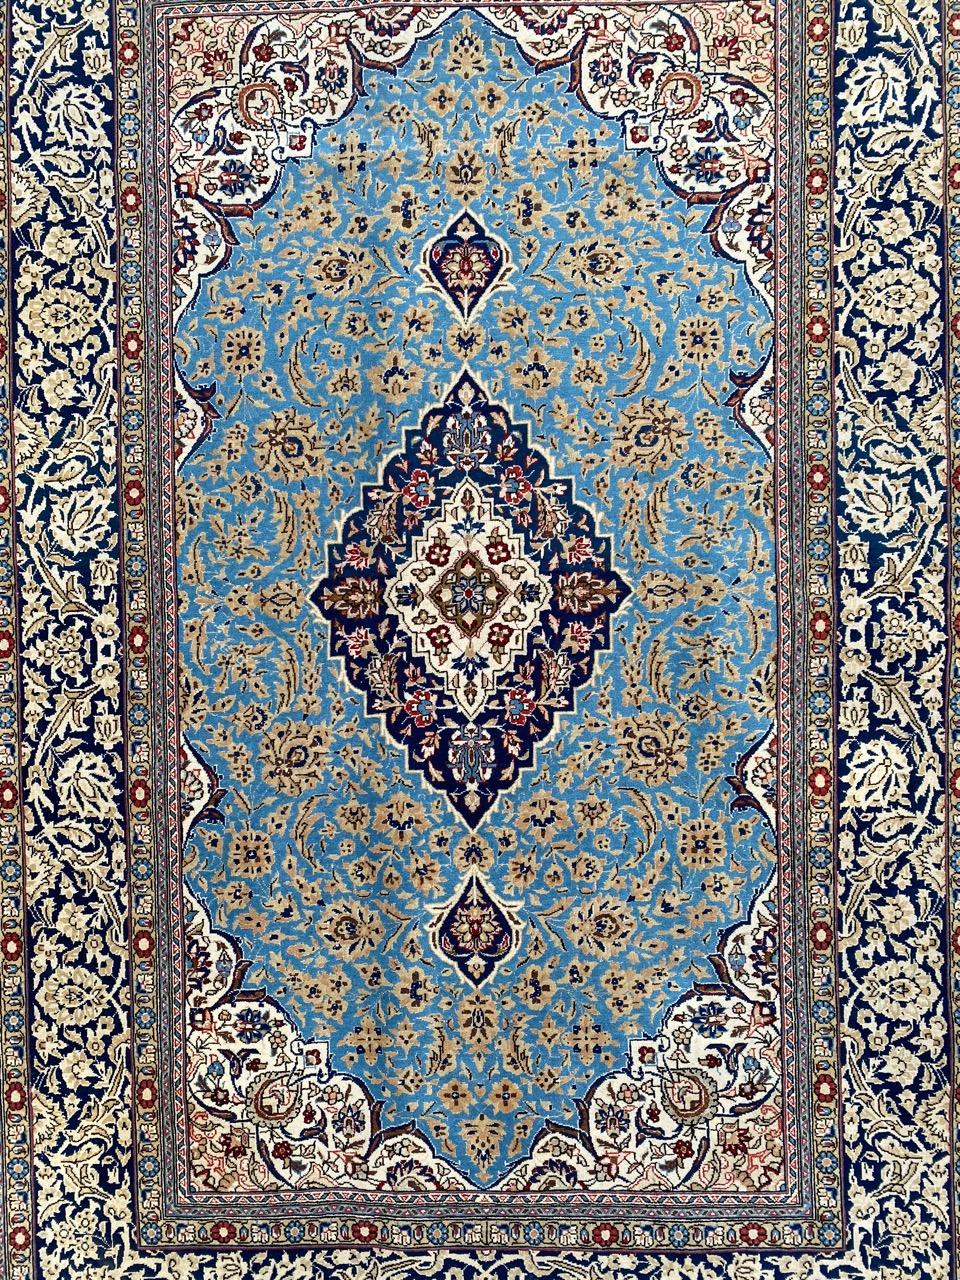 Sehr schöner Midcentury-Teppich mit schönem floralem Medaillon-Muster und schönen Farben, vollständig und fein handgeknüpft mit Wolle und Seidensamt auf Baumwollbasis.

✨✨✨
